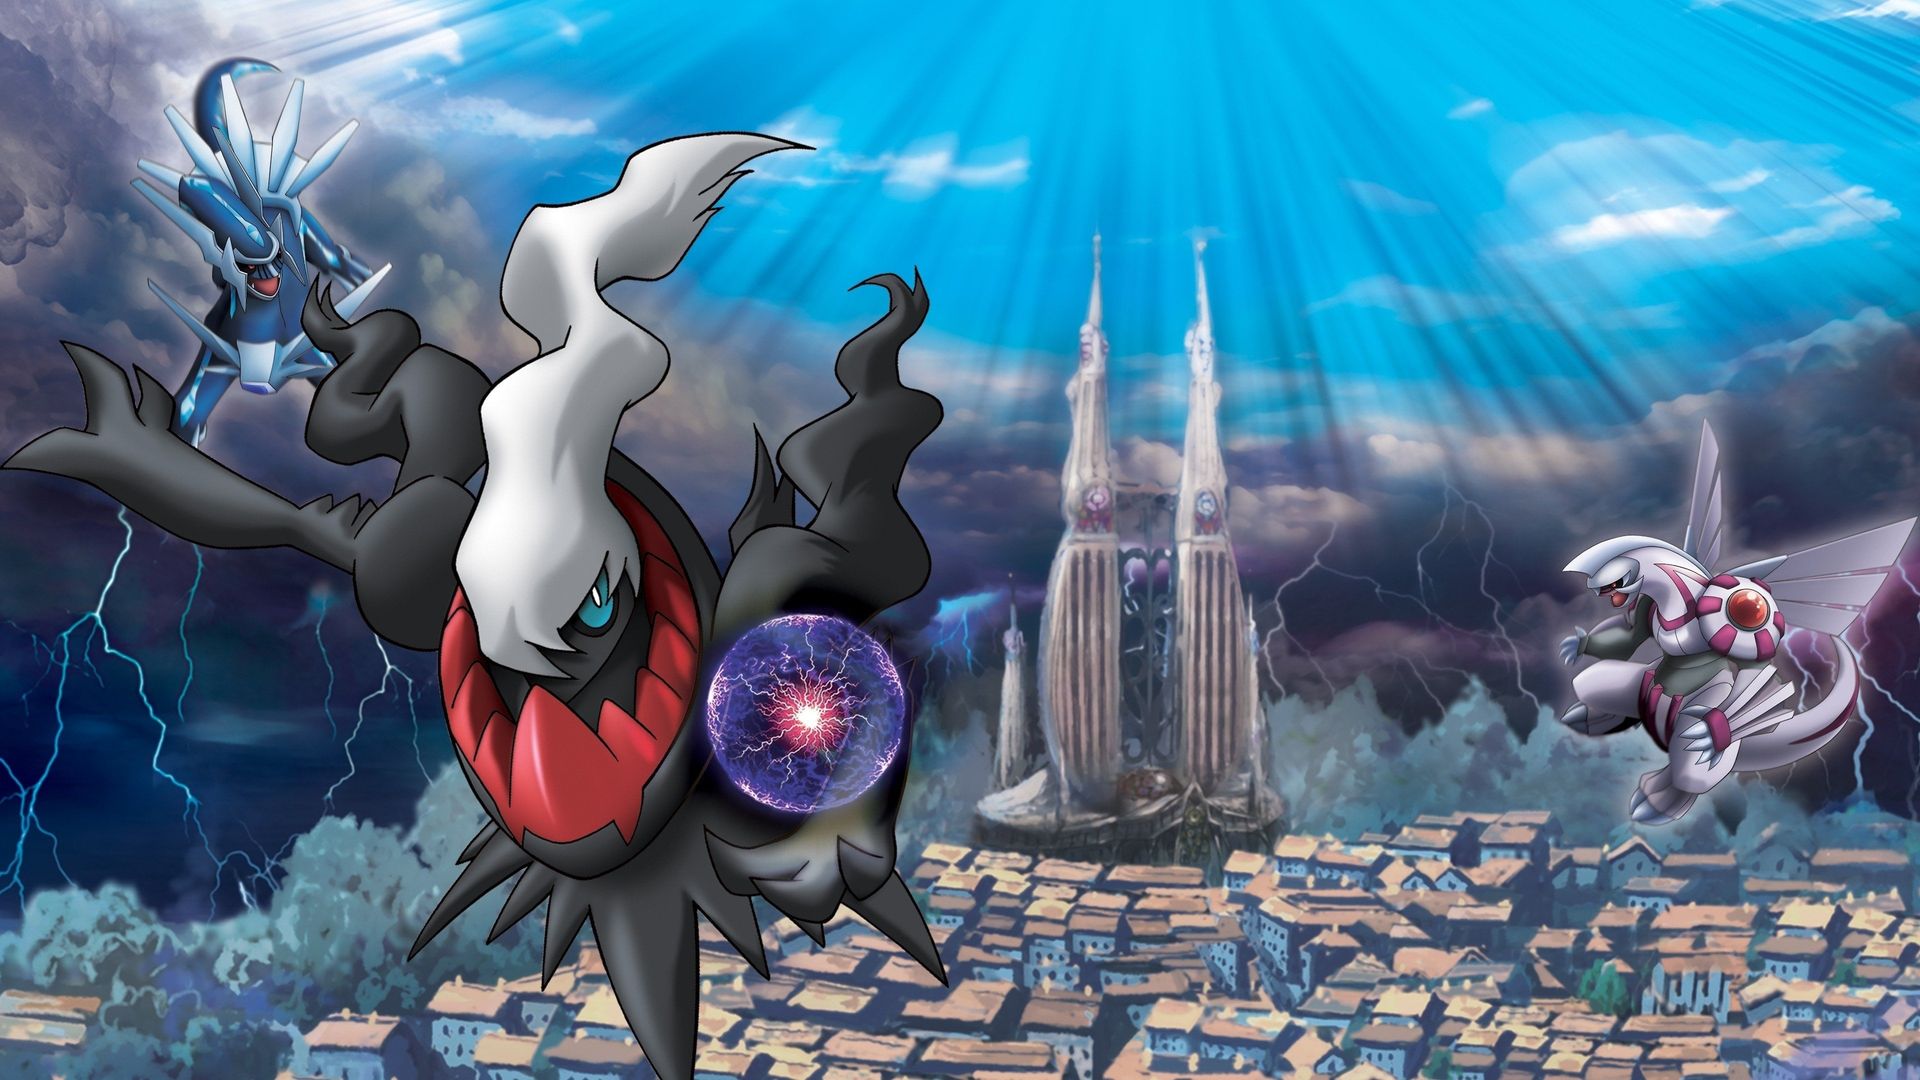 Download pokemon the rise of darkrai